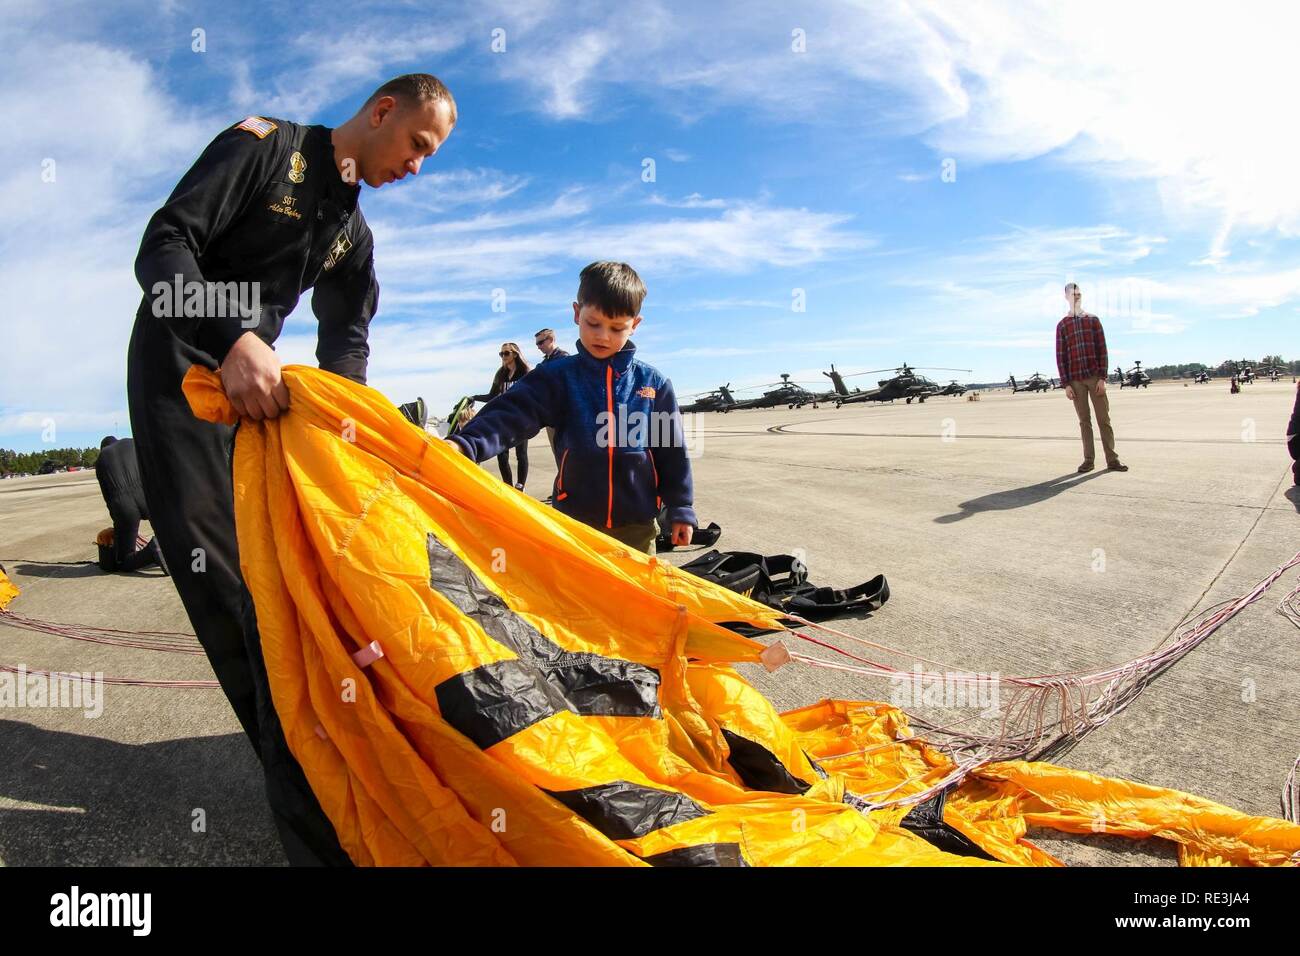 Membre de l'armée américaine Golden Knights pliages son parachute avec le peu d'aide d'un jeune spectateur après le saut dans l'organisation de la famille day organisé par la 82e Brigade d'aviation de combat, Fort Bragg, N.C., 22 novembre 2016. Banque D'Images